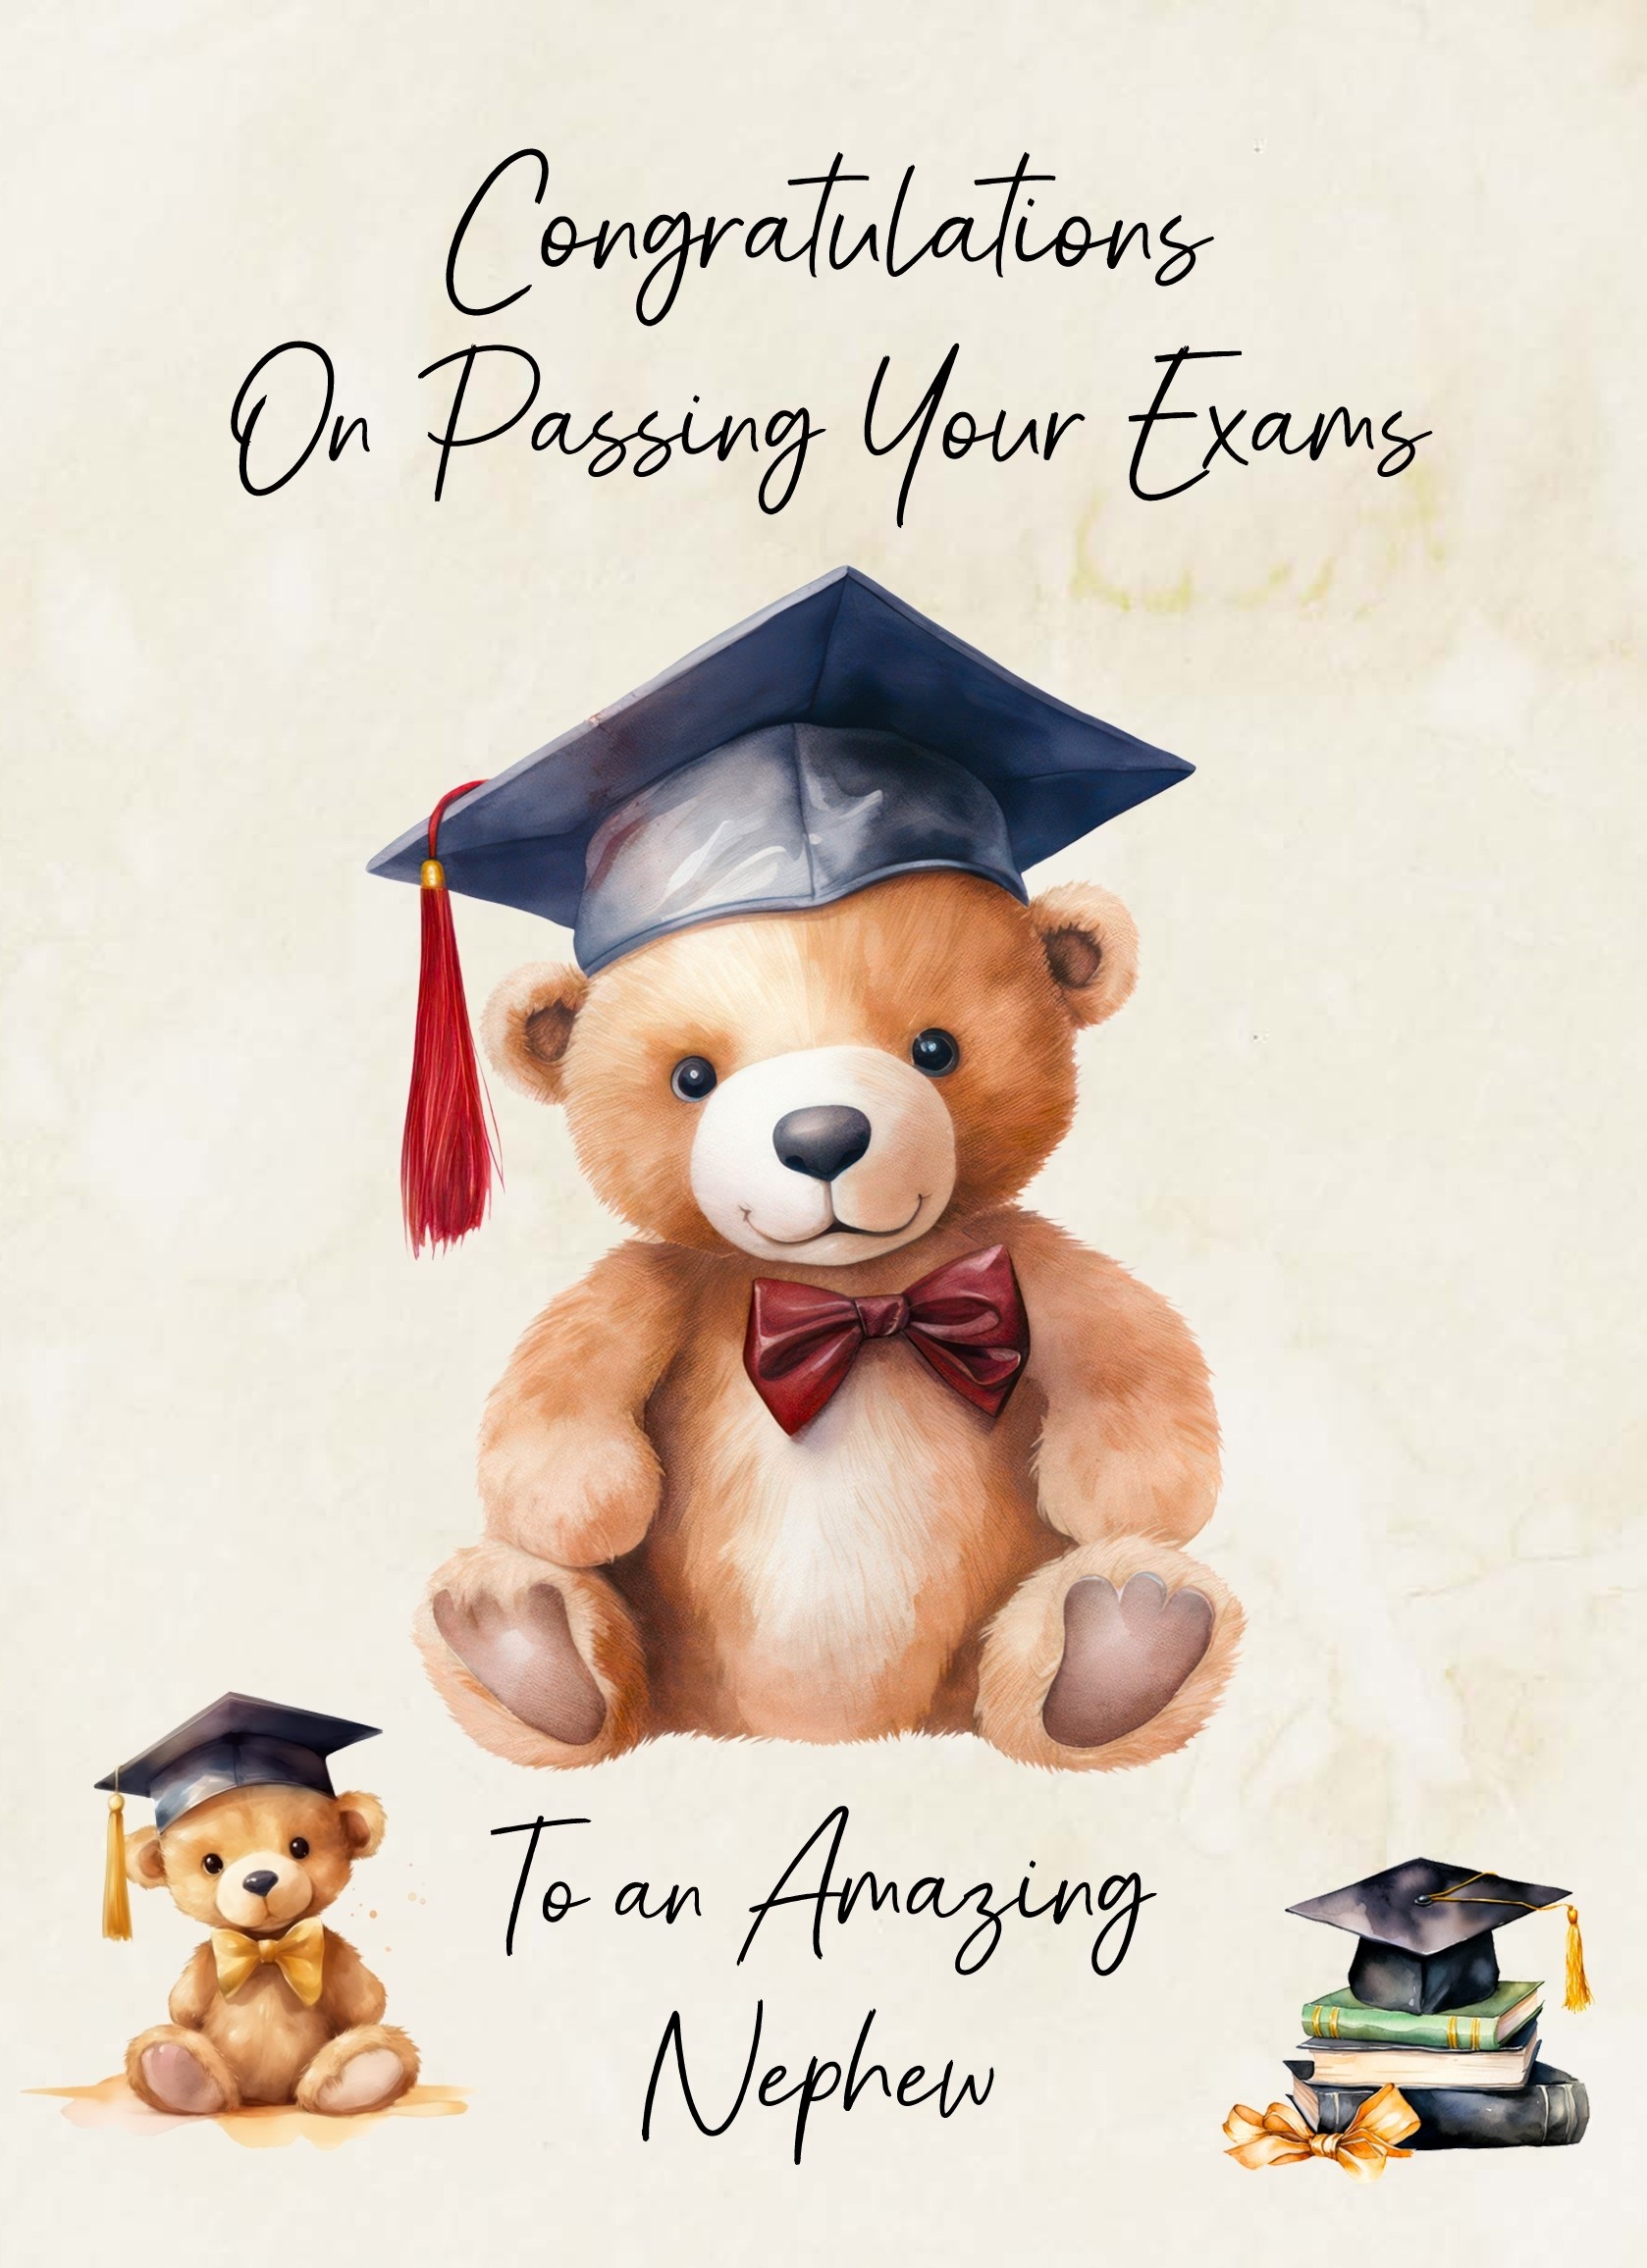 Graduation Passing Exams Congratulations Card For Nephew (Design 3)